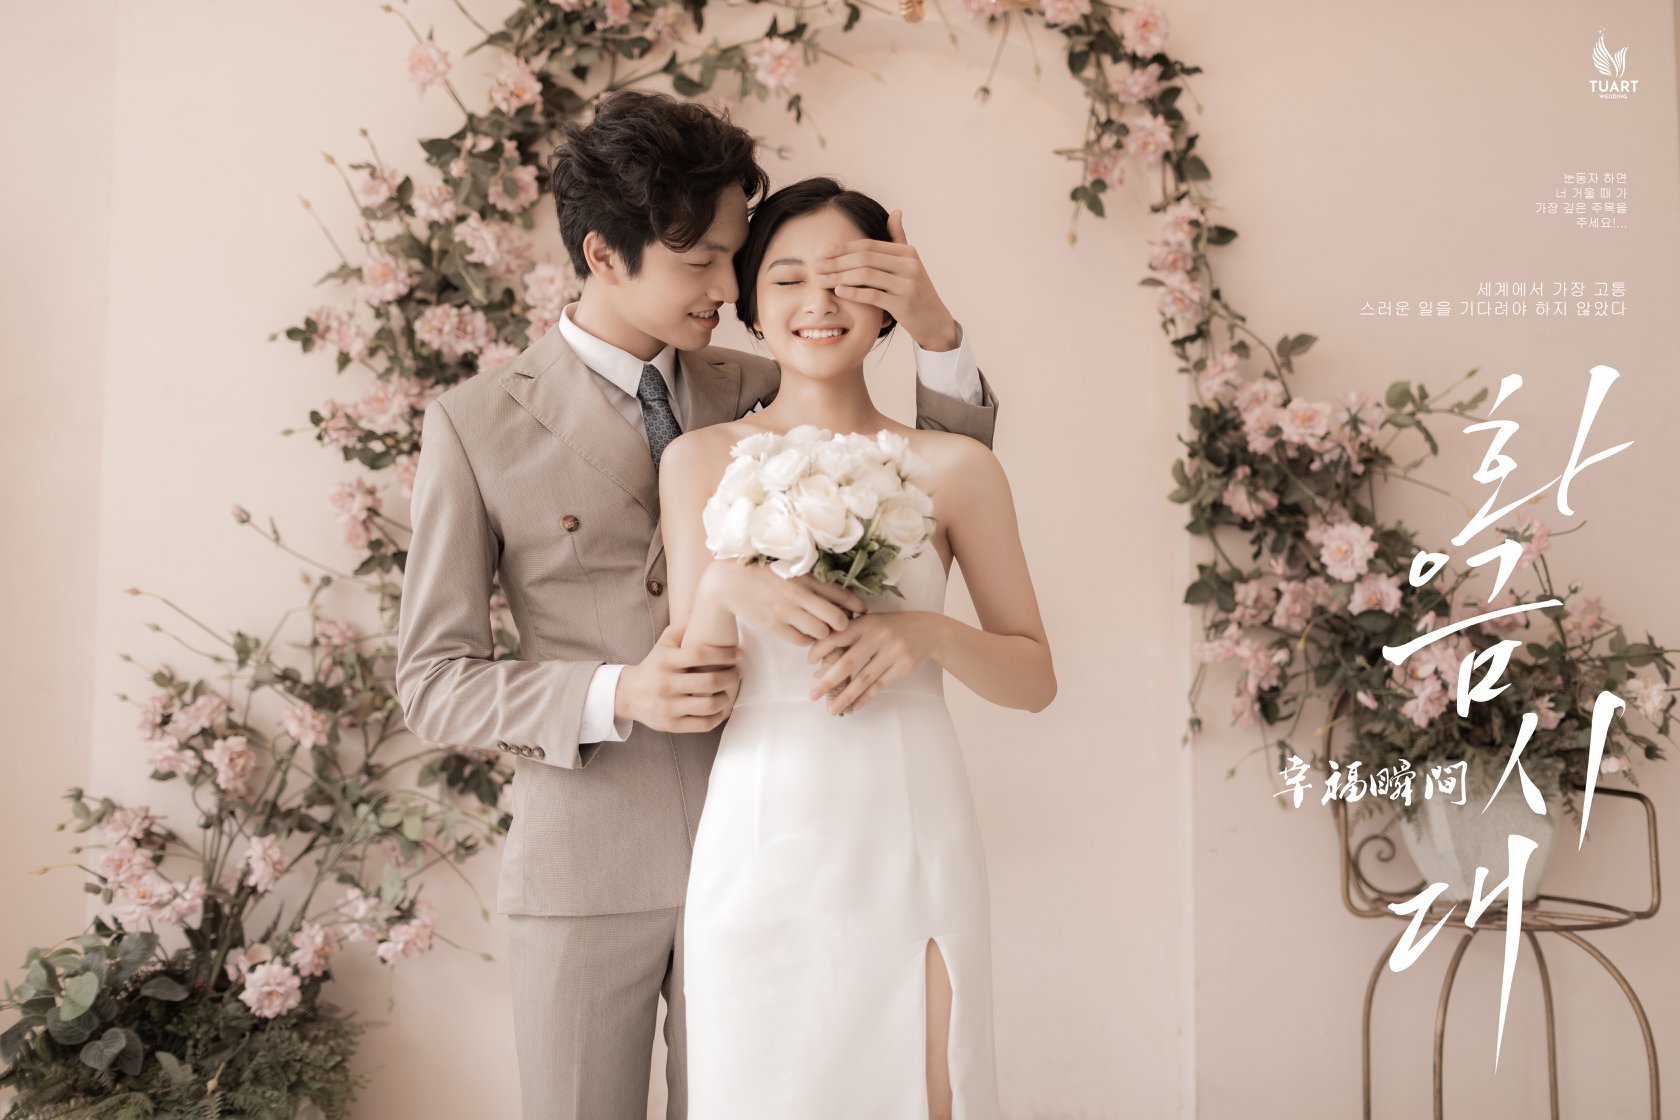 Chụp hình cưới tại Phú Nhuận sẽ đưa bạn trở lại thời khắc ngọt ngào nhất trong đời với tình yêu của mình. Bạn sẽ được khám phá những góc phố xinh đẹp, những địa điểm lãng mạn để tạo nên bộ ảnh cưới đẹp nhất.